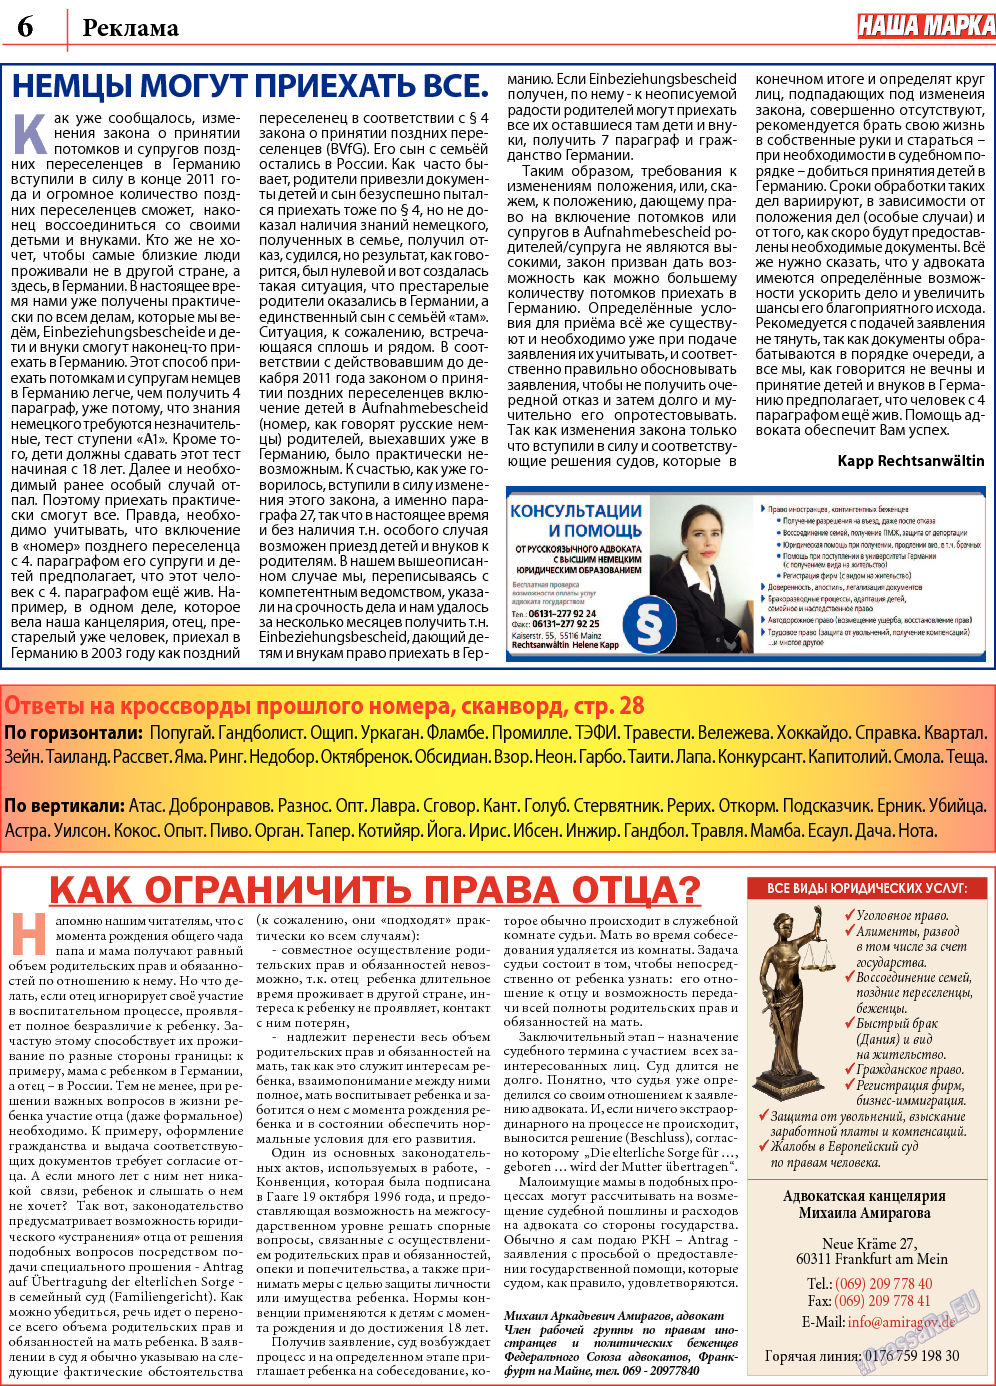 Наша марка (газета). 2013 год, номер 11, стр. 6